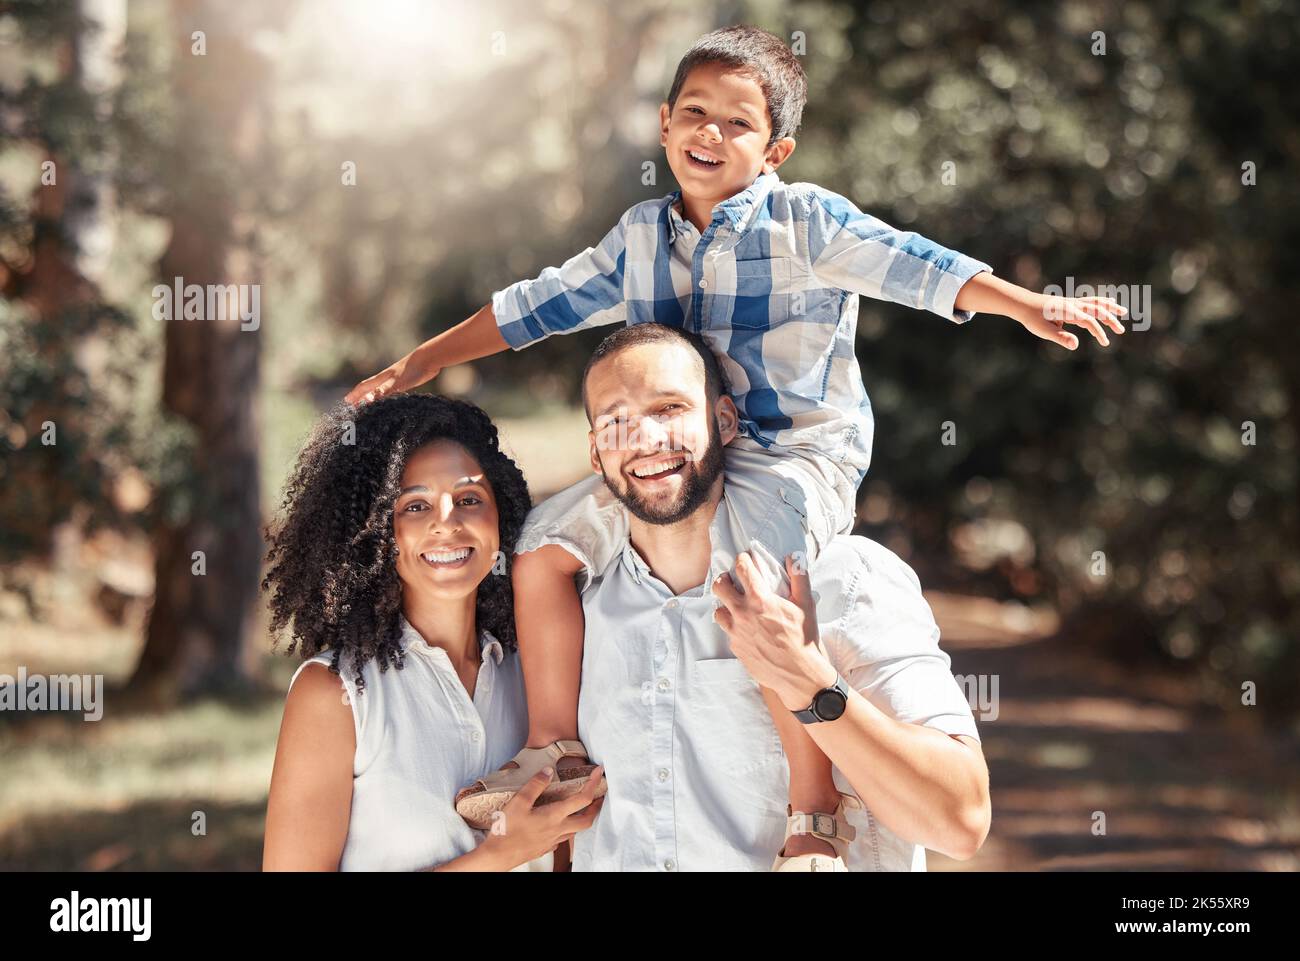 Glücklich, Lächeln und Porträt einer Familie im Wald zusammen Spaß in der Natur während des Urlaubs. Glück, Liebe und fürsorgliche Eltern aus puerto rico Stockfoto